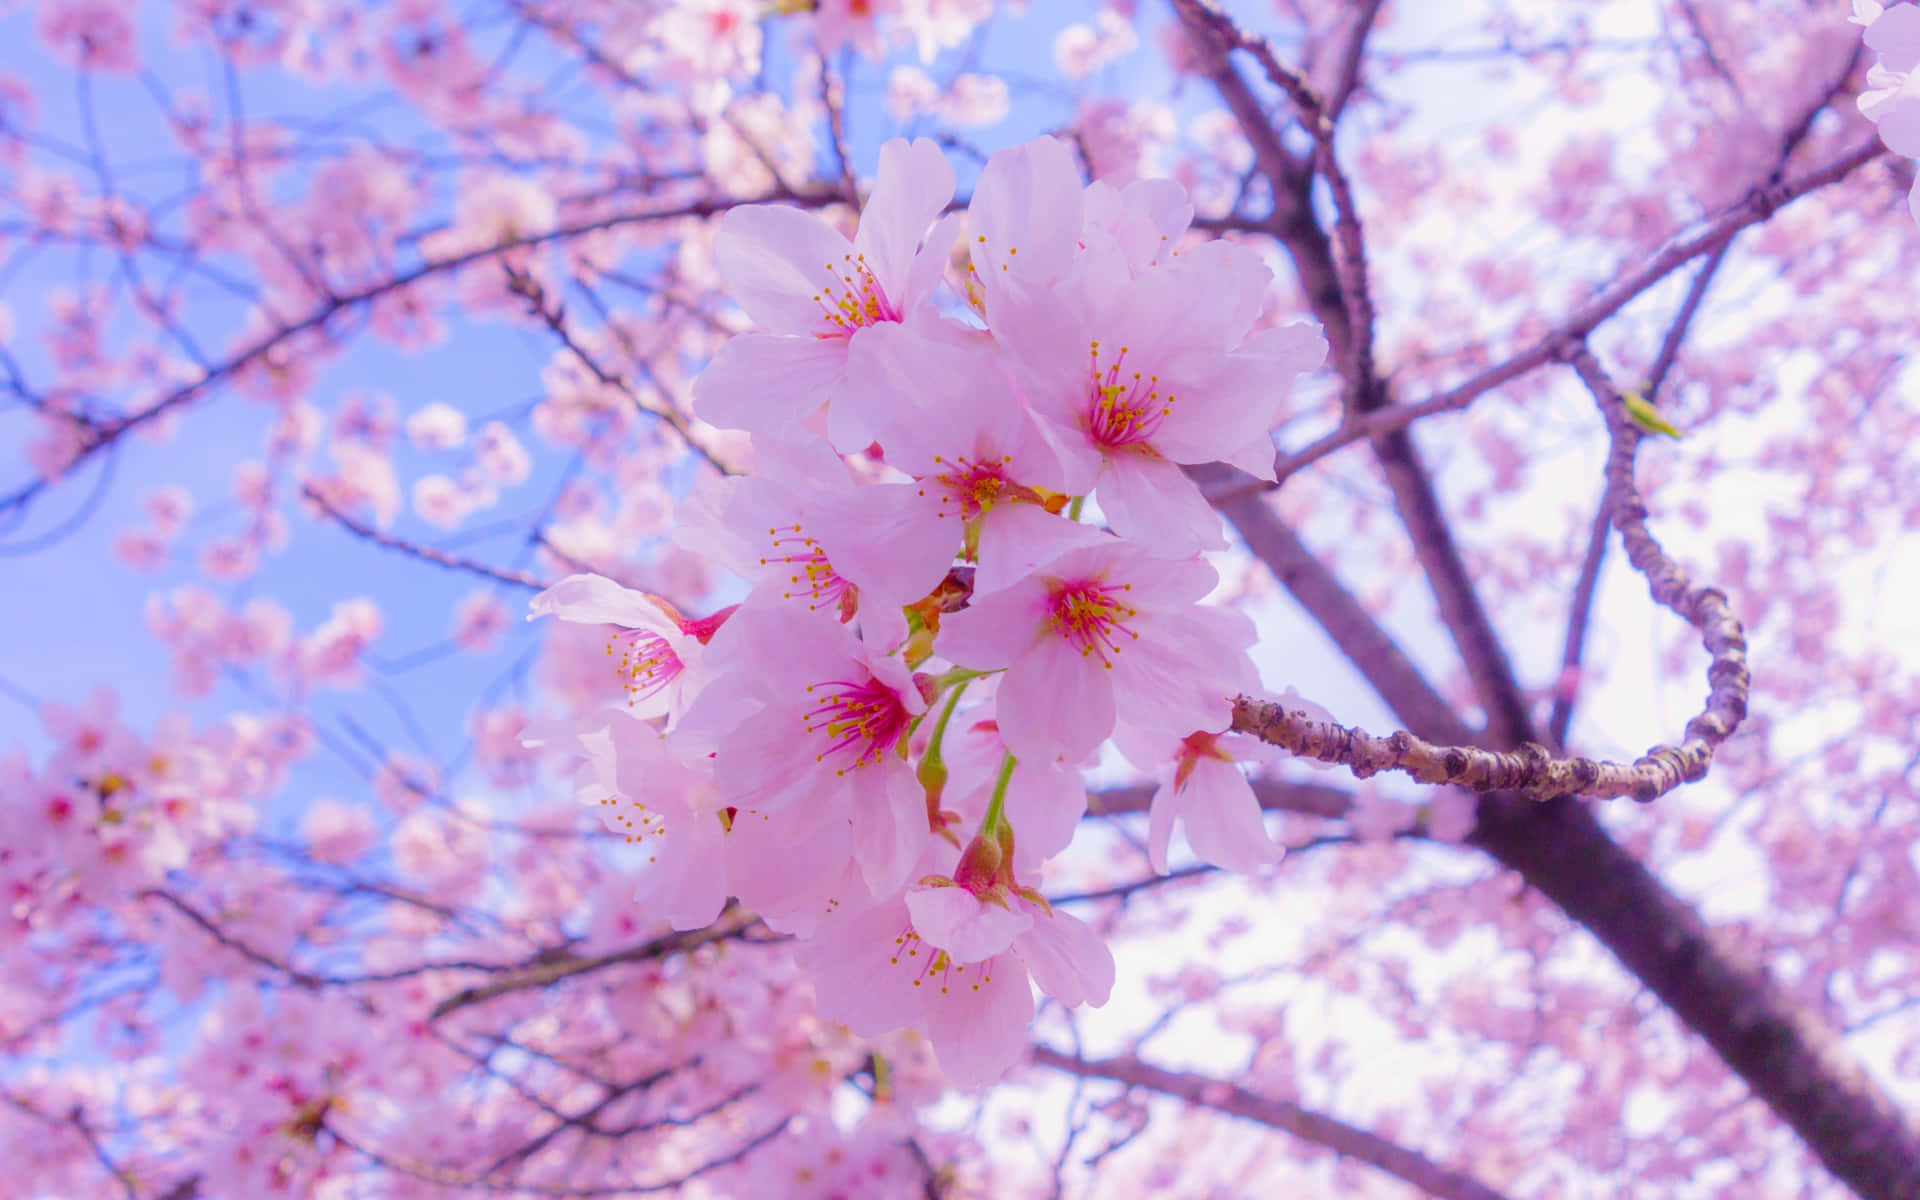 Disfrutade La Hermosa Tranquilidad De Las Flores De Cerezo En Este Paisaje De Anime. Fondo de pantalla